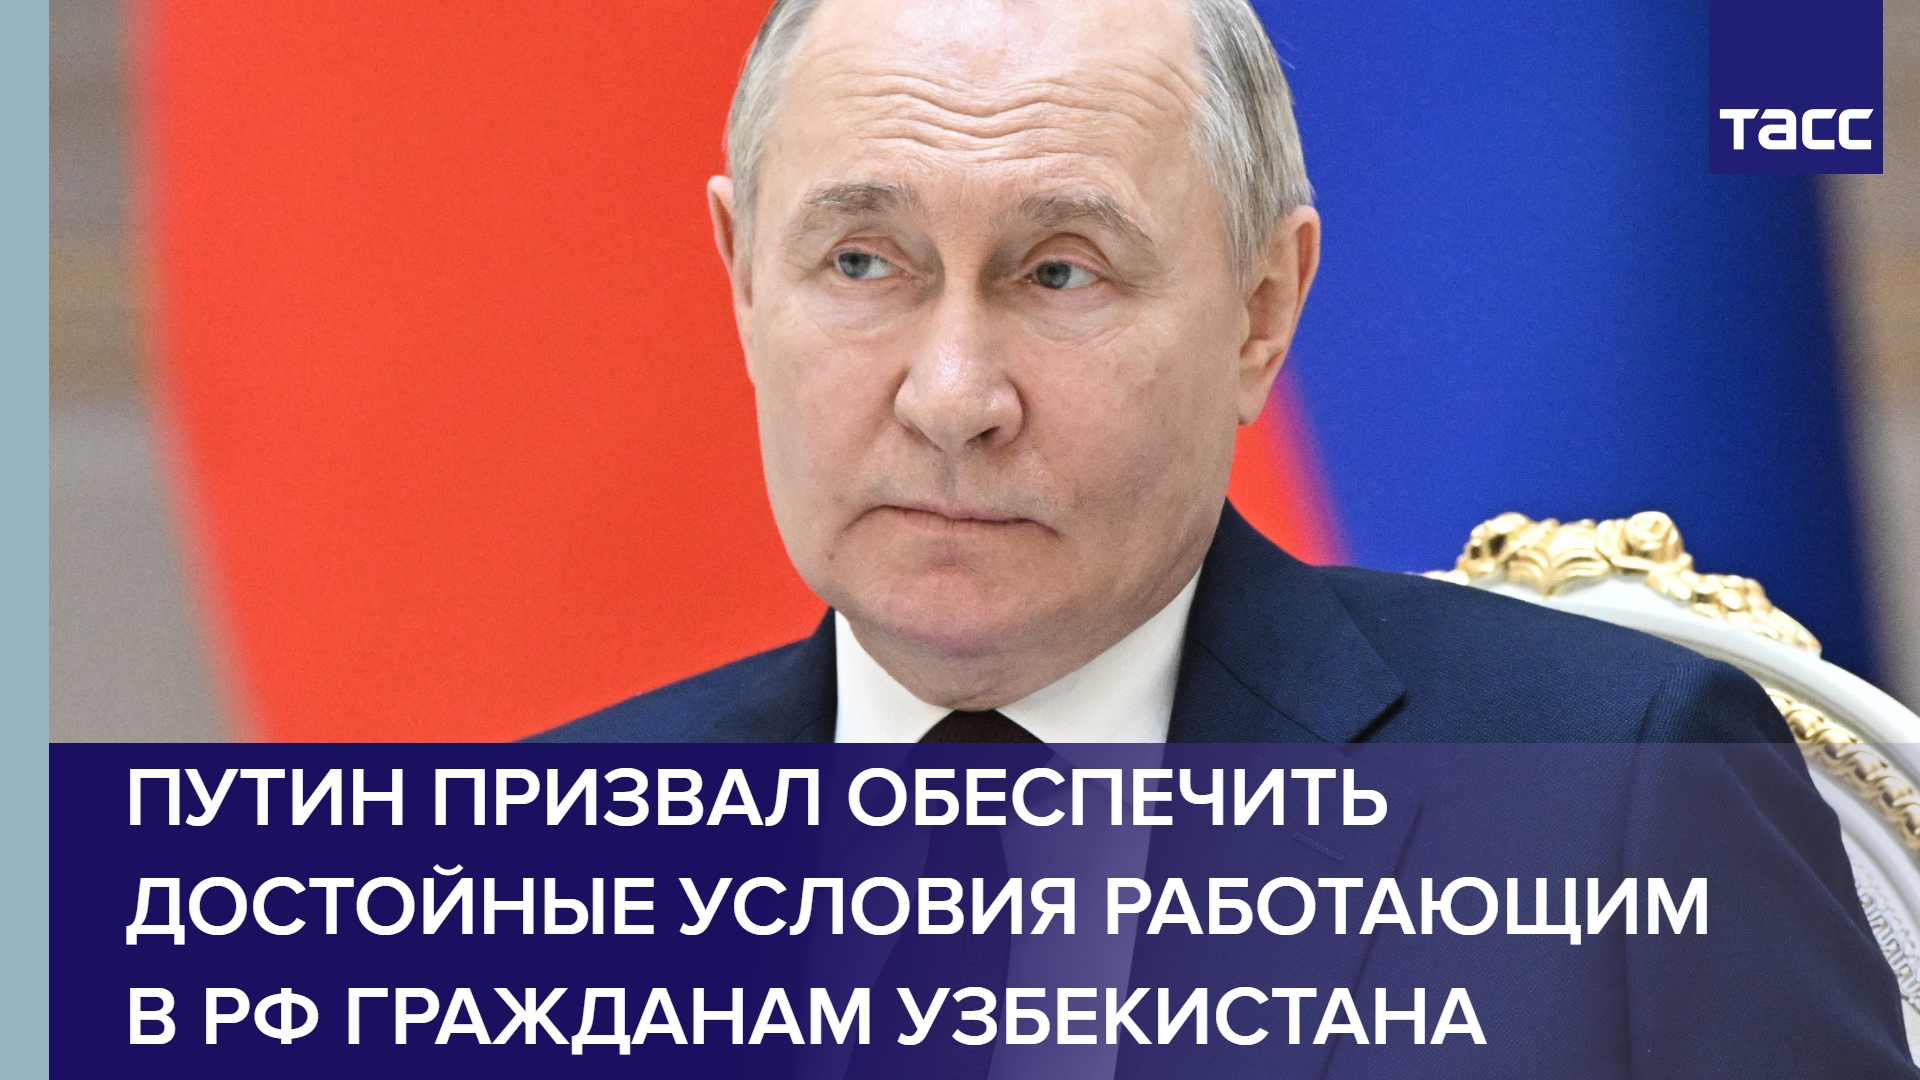 Путин призвал обеспечить достойные условия работающим в РФ гражданам Узбекистана